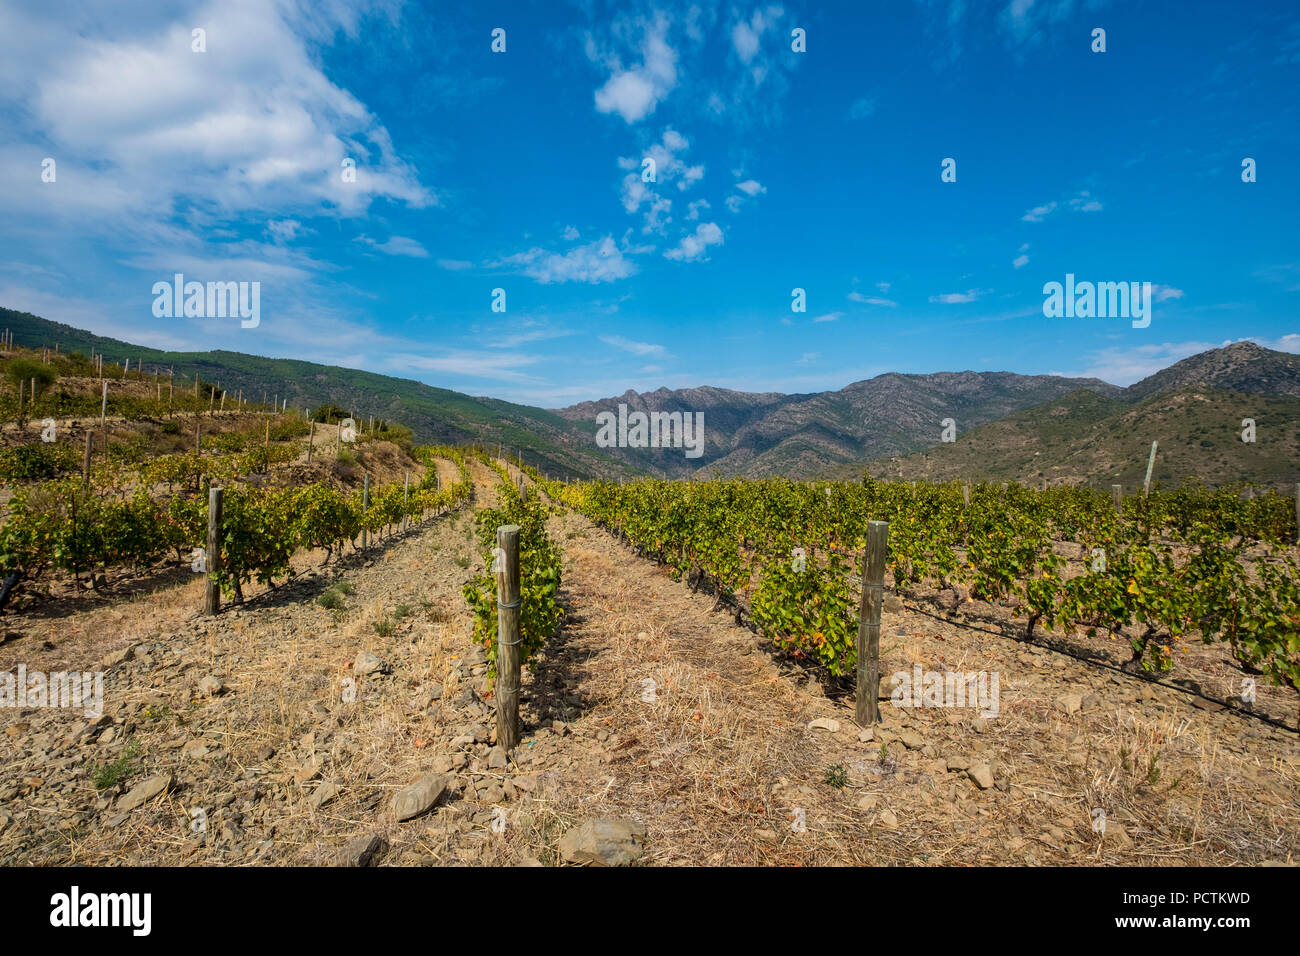 Vignes pour la production de vins bio autour de la ville de Colera au nord de la Costa Brava, dans la province de Gérone en Catalogne Espagne Banque D'Images